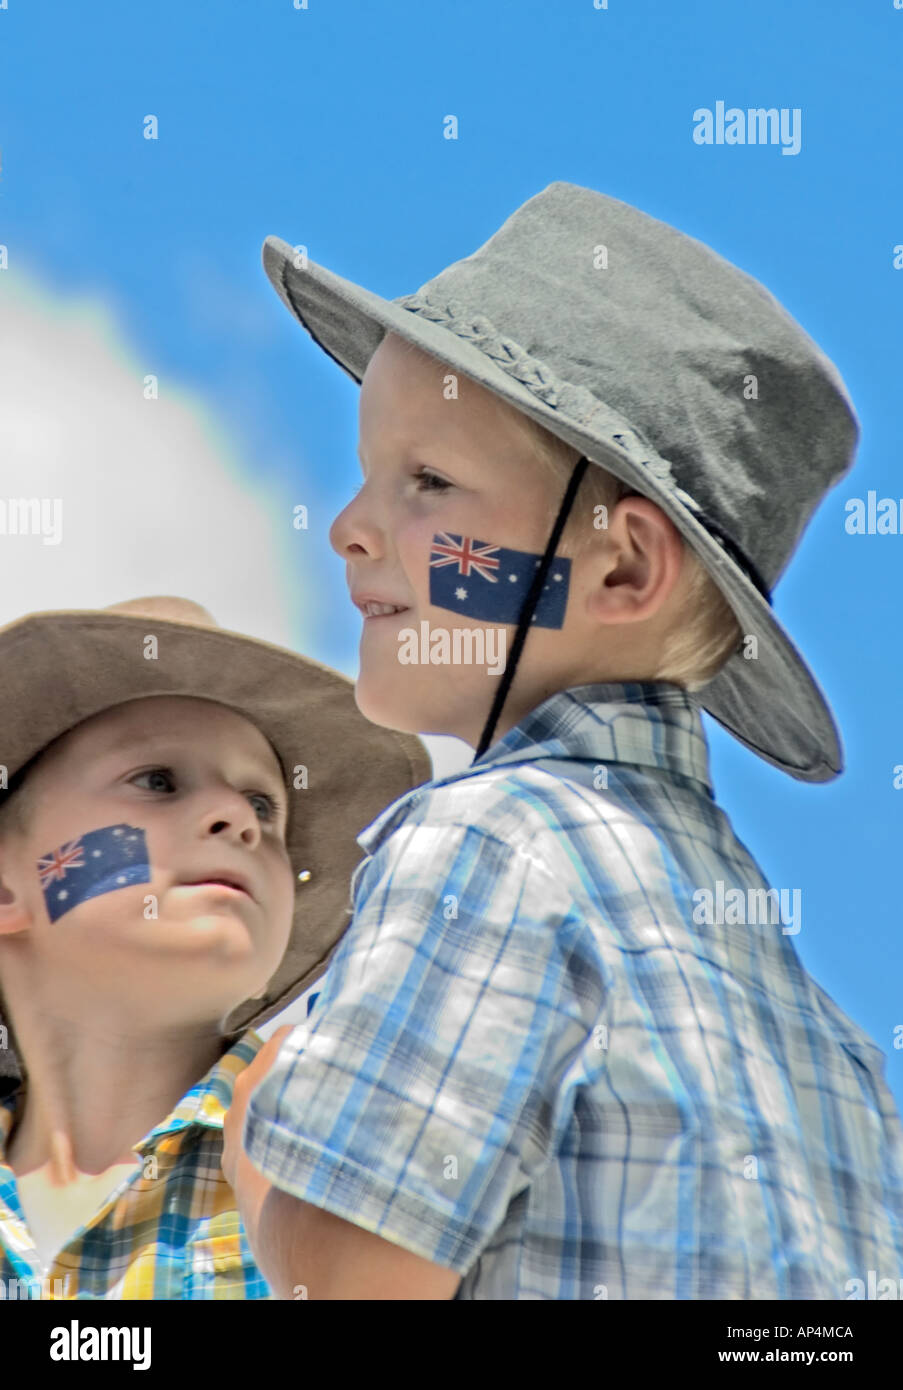 Zwei australische Kinder, mit einem Aussie Flagge tätowiert auf ihrer Wange feiern Australia Day, Canberra, Australien Stockfoto